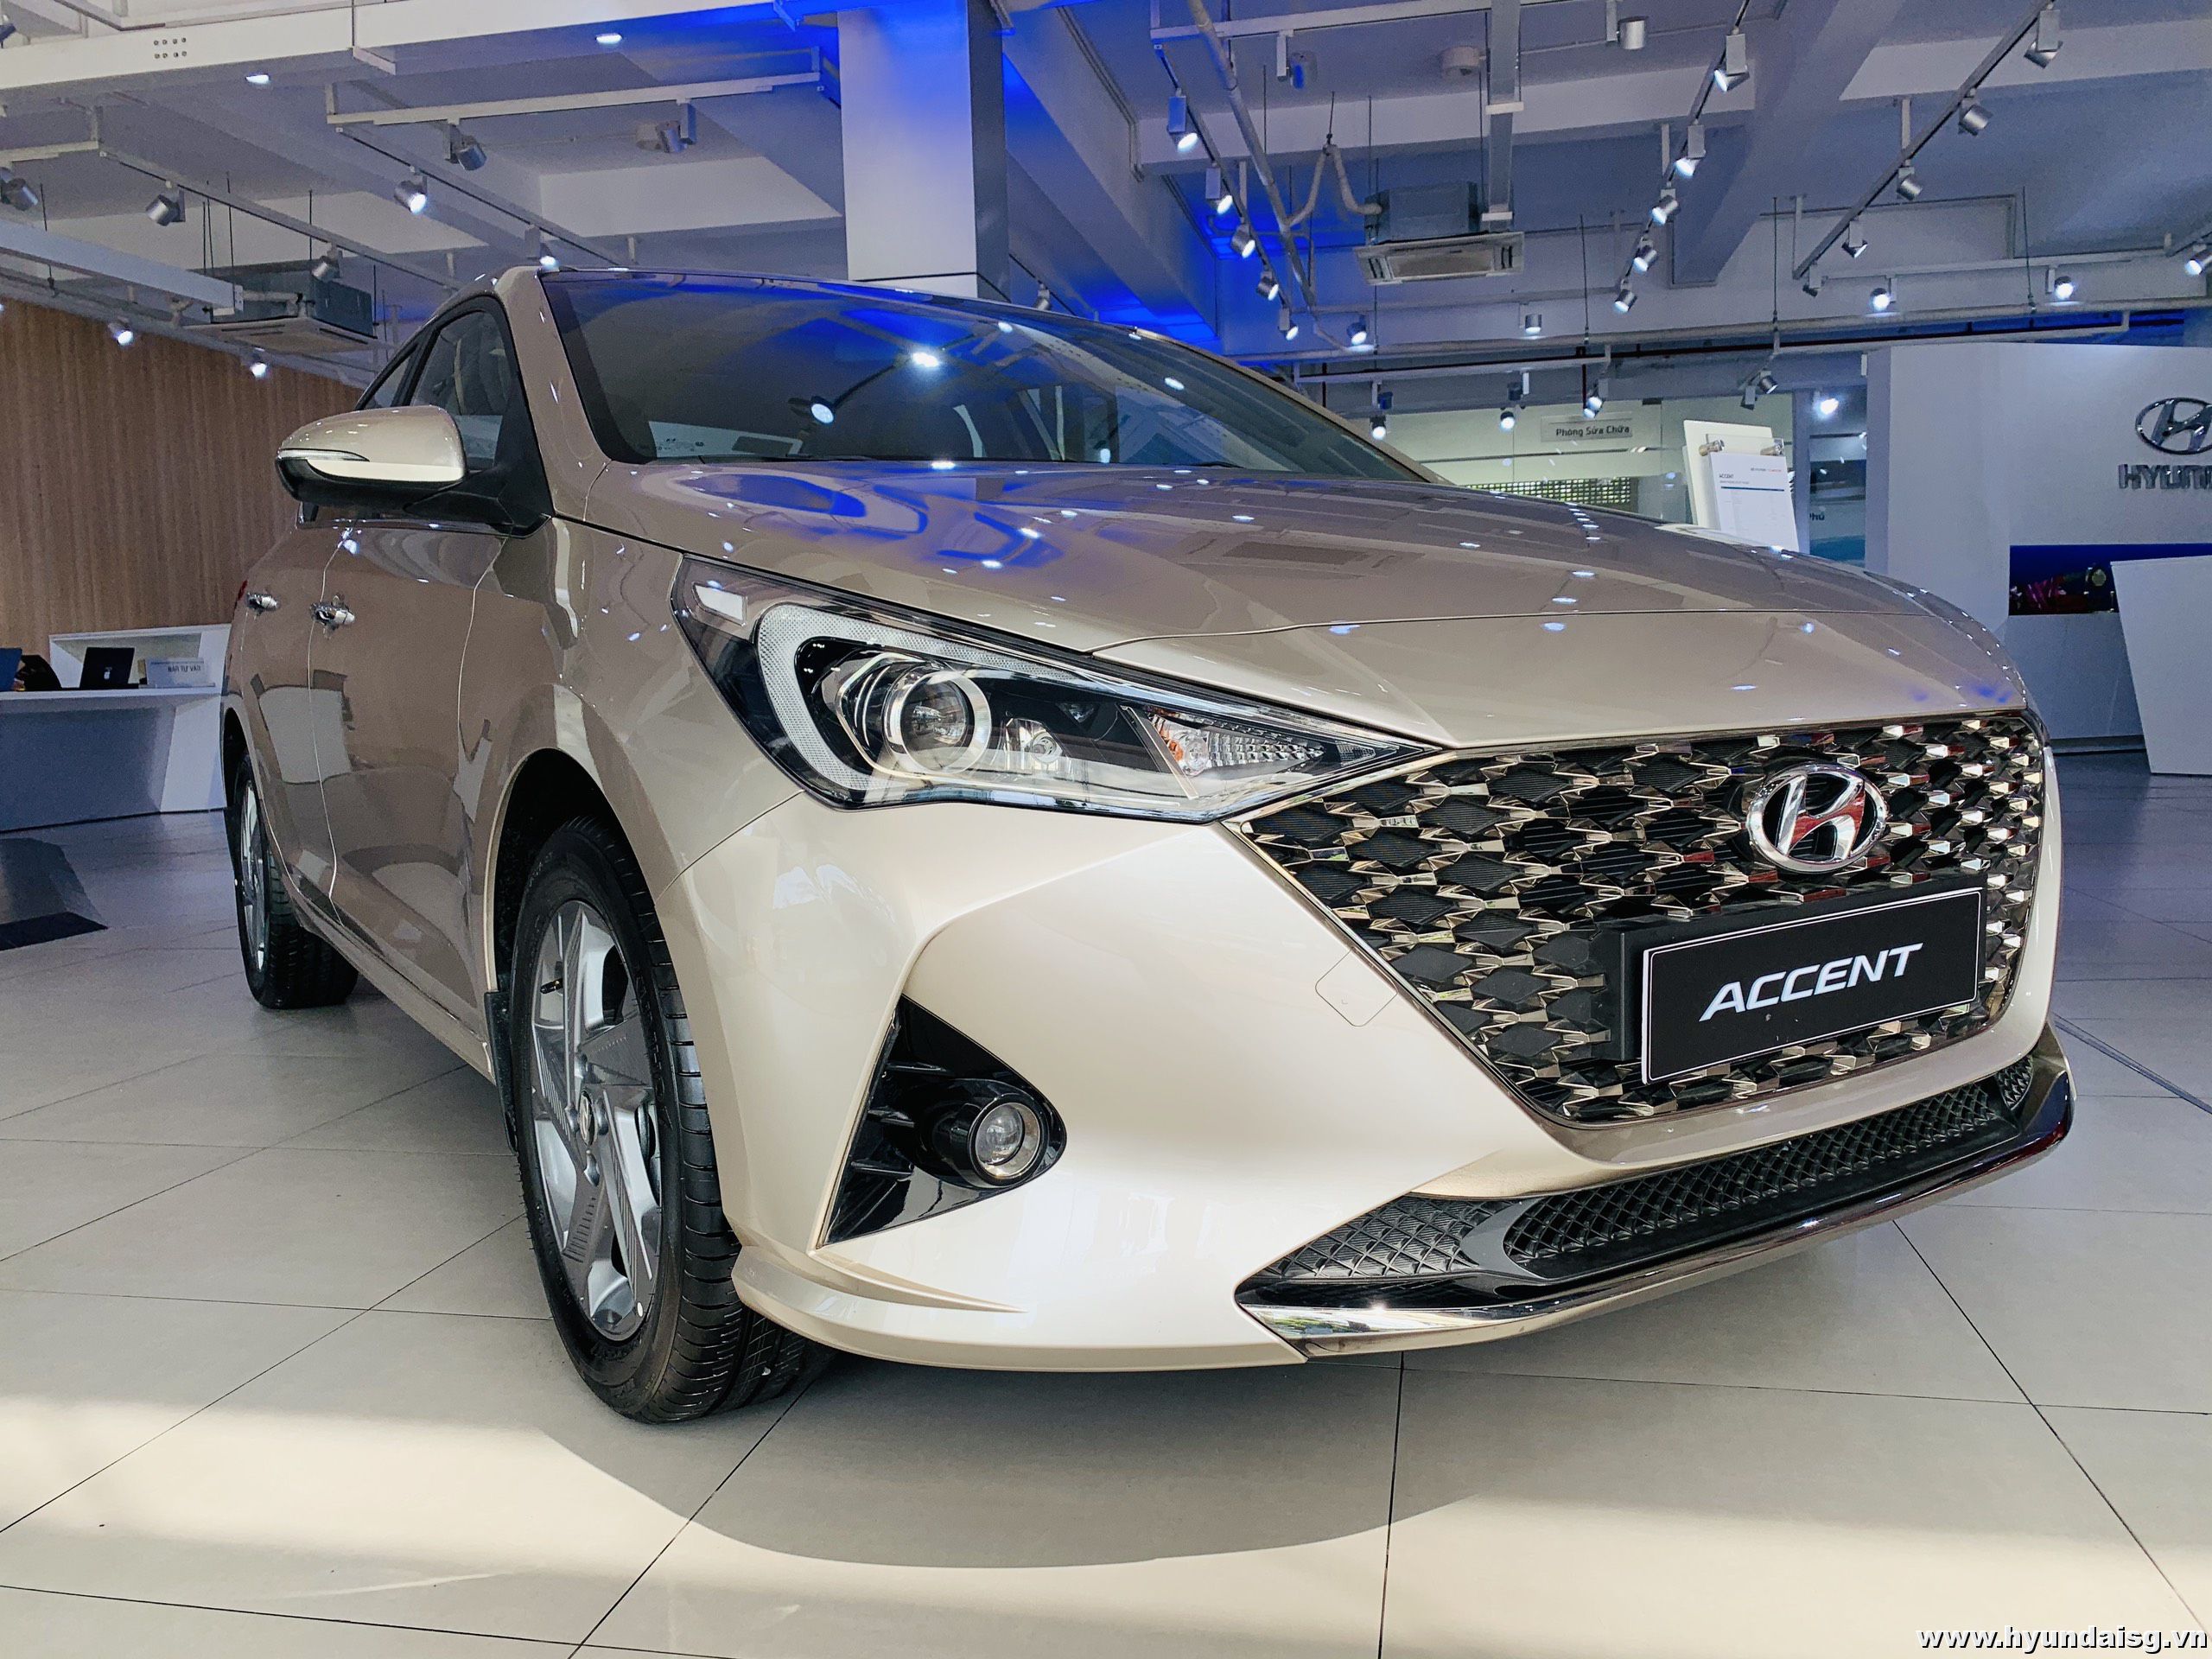 Read more about the article Tư vấn mua xe Hyundai Accent: Giá cả, thủ tục mua xe, bảo hành và dịch vụ sau bán hàng